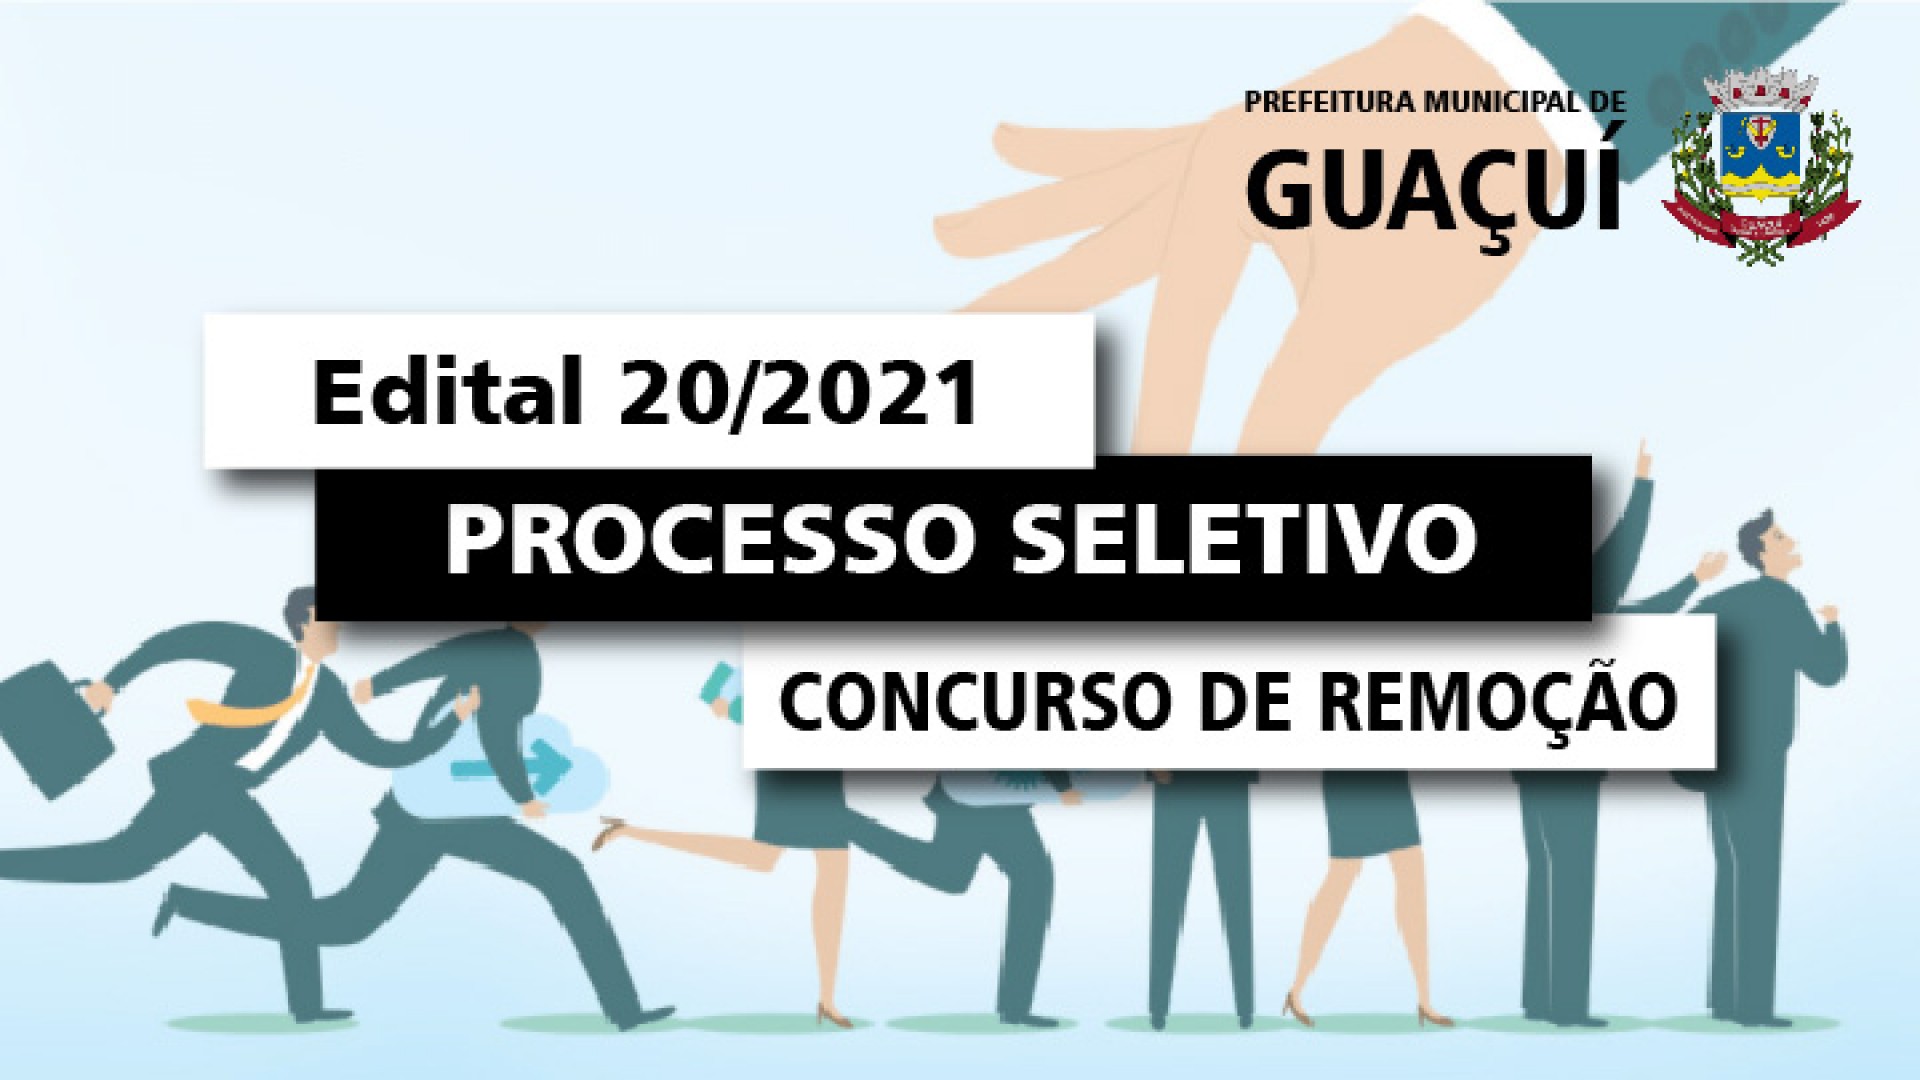 EDITAL EDUCAÇÃO Nº 020/2021 - REMOÇÃO